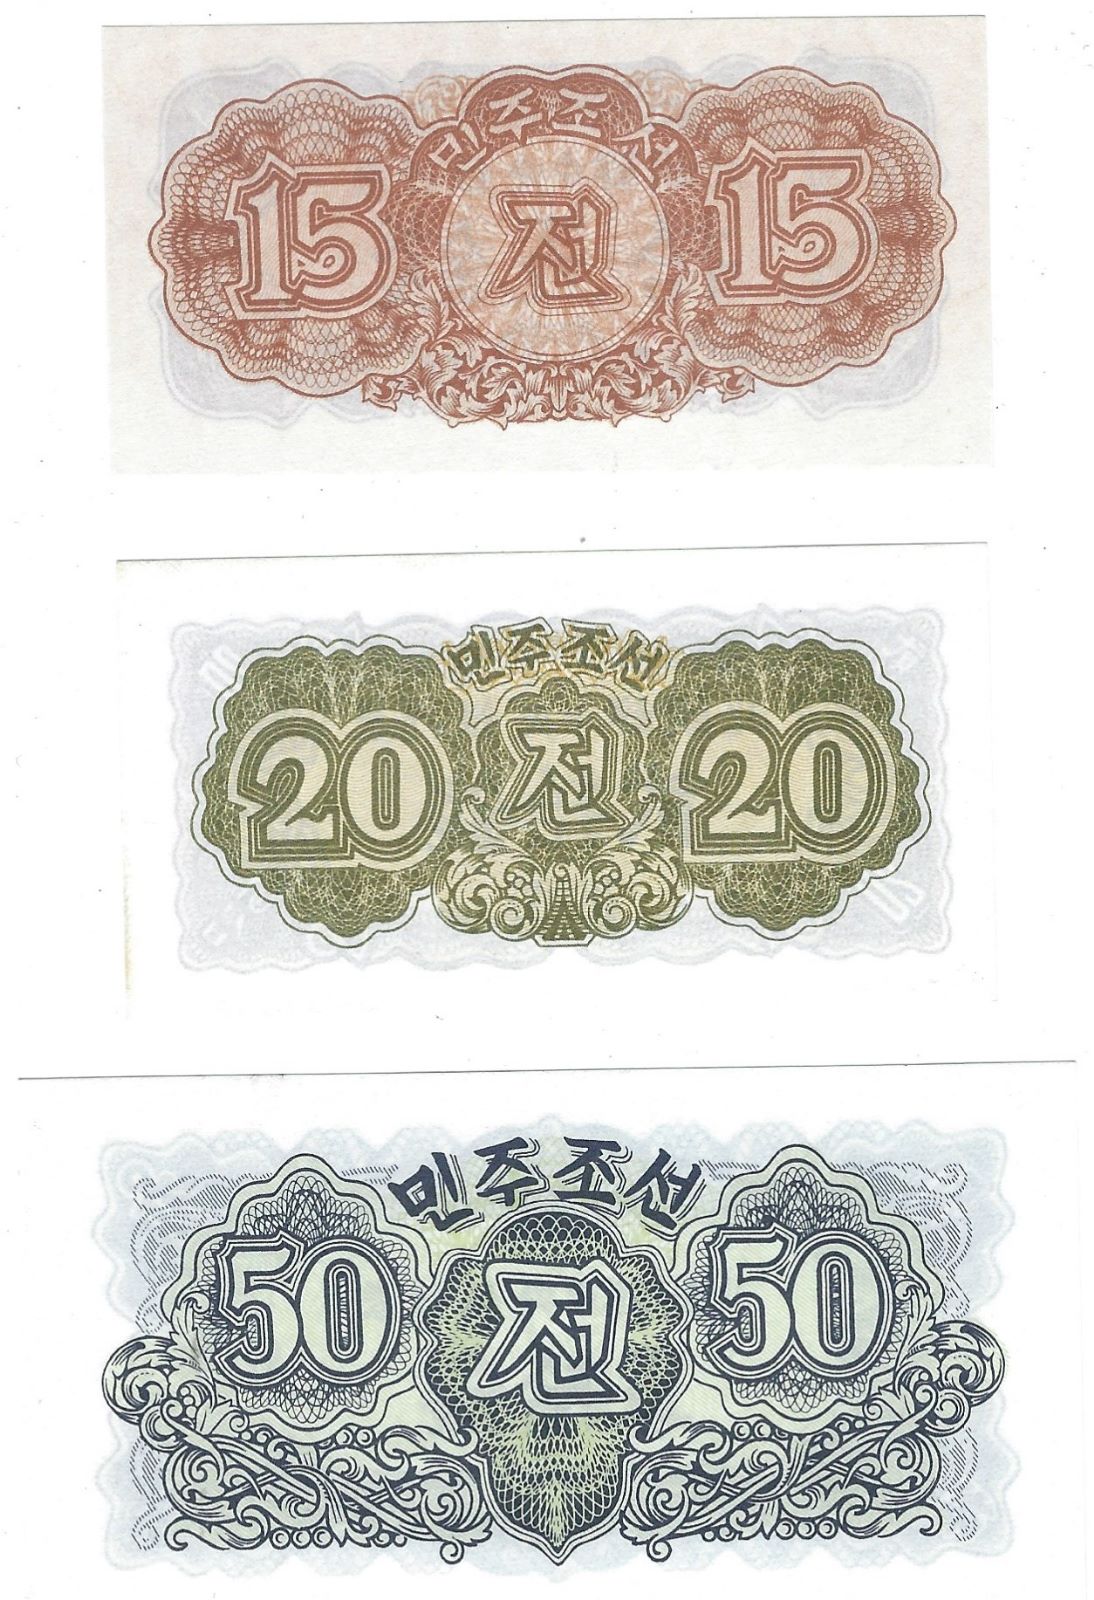 Korea 15&20,50 Chon P5a,6a,7a 1947,UNC.10&50 Jeon Smallest Paper Money of N Korea about 3.3"x1.7".K1D